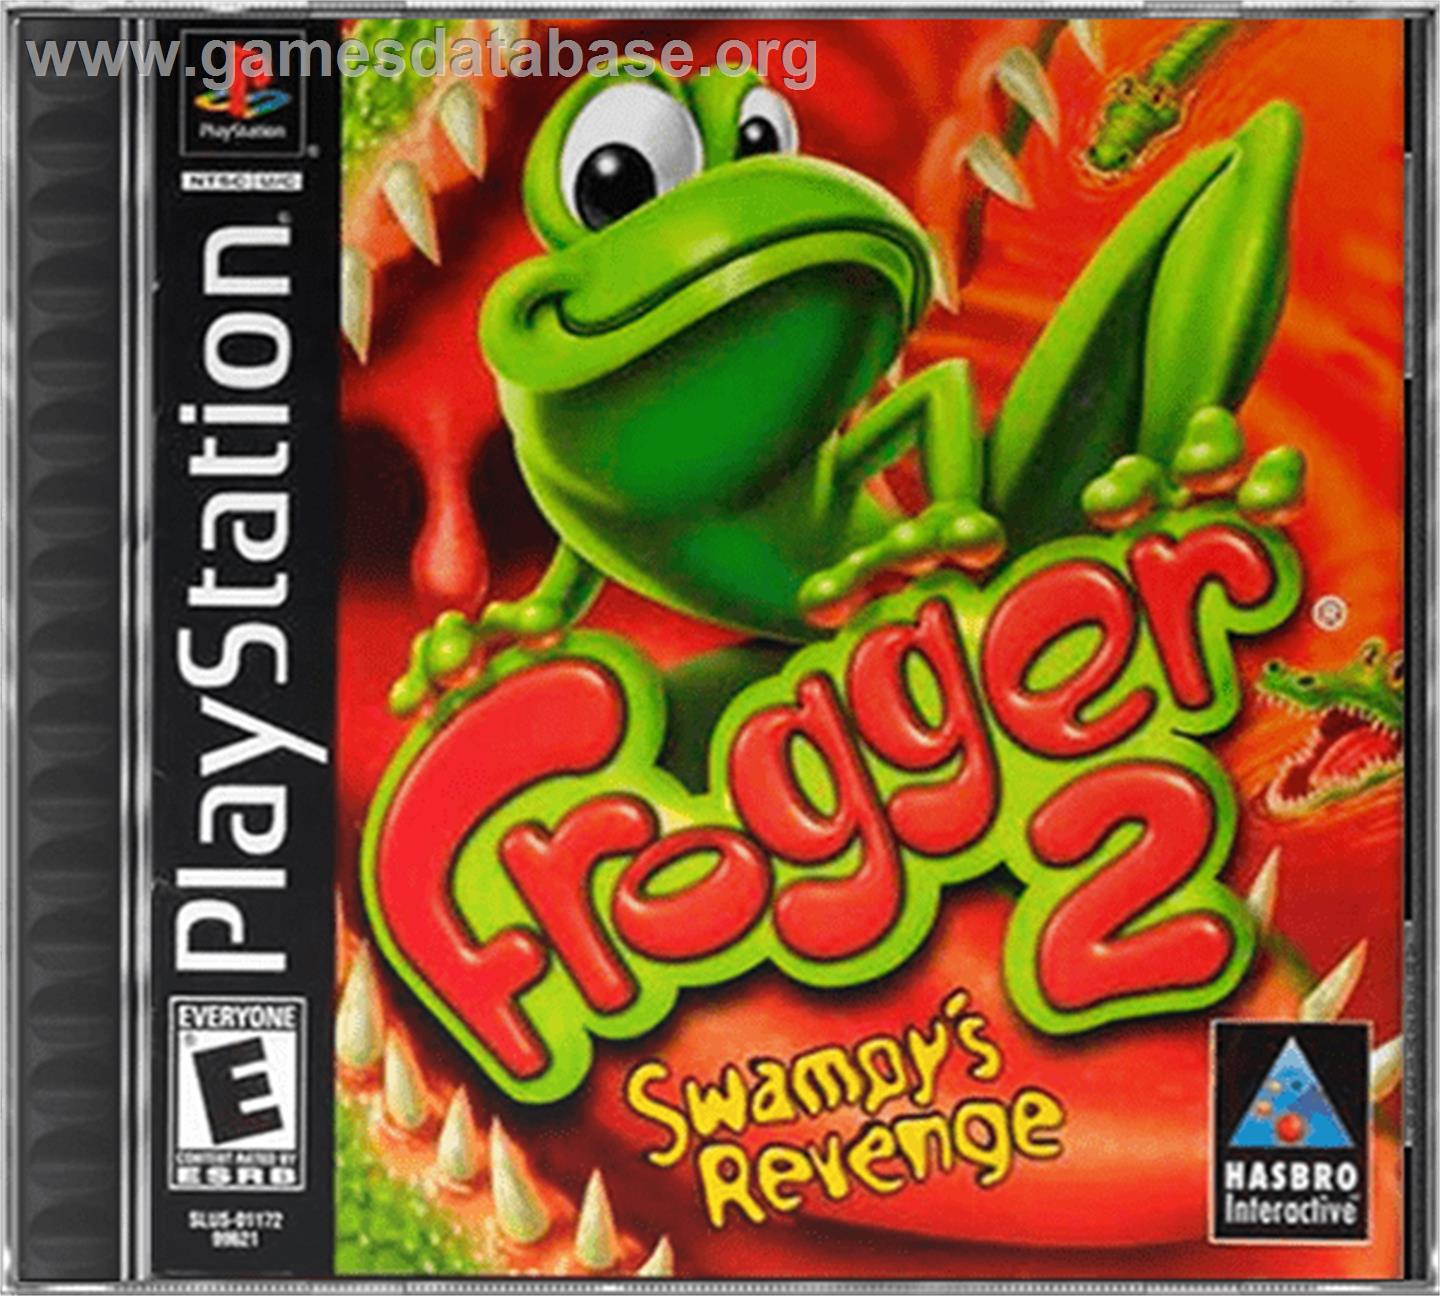 Frogger 2: Swampy's Revenge - Sony Playstation - Artwork - Box